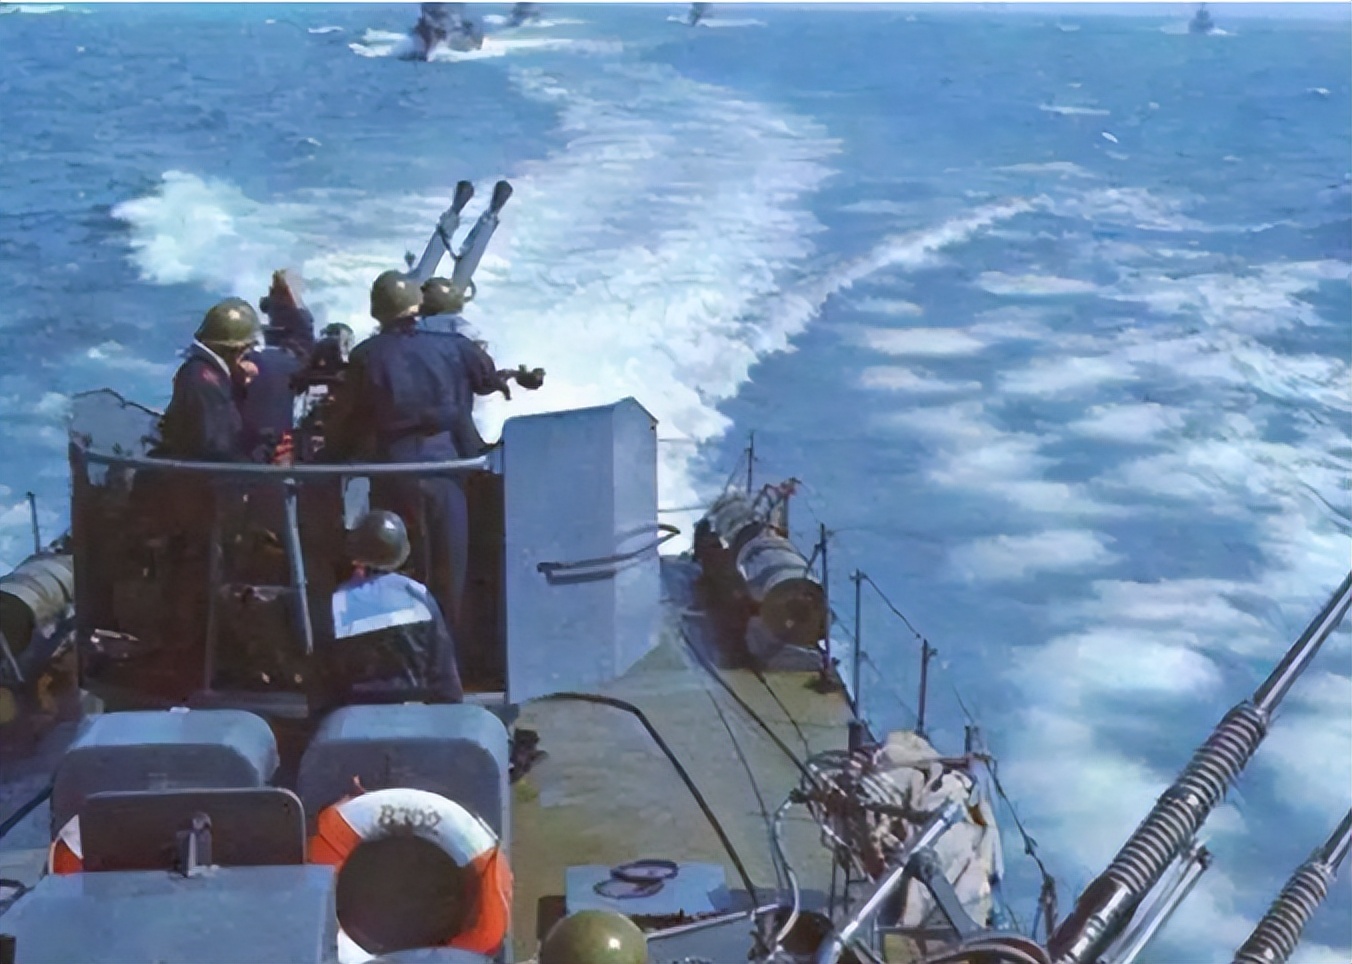 2003年中越海战图片